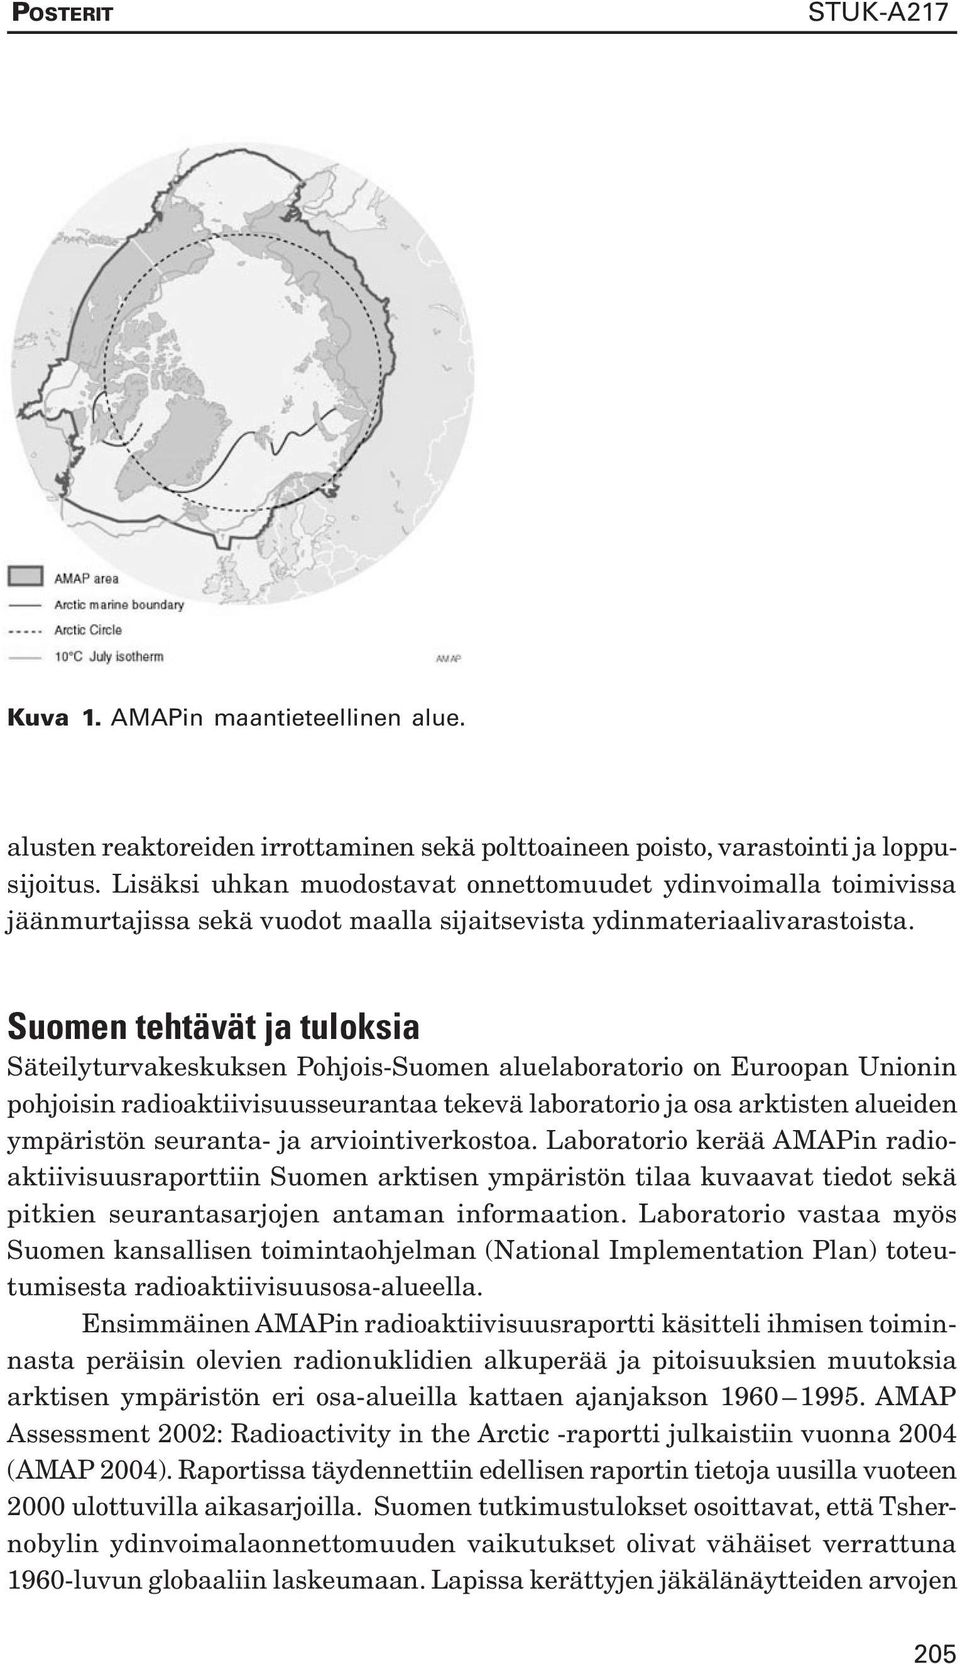 Suomen tehtävät ja tuloksia Säteilyturvakeskuksen Pohjois-Suomen aluelaboratorio on Euroopan Unionin pohjoisin radioaktiivisuusseurantaa tekevä laboratorio ja osa arktisten alueiden ympäristön